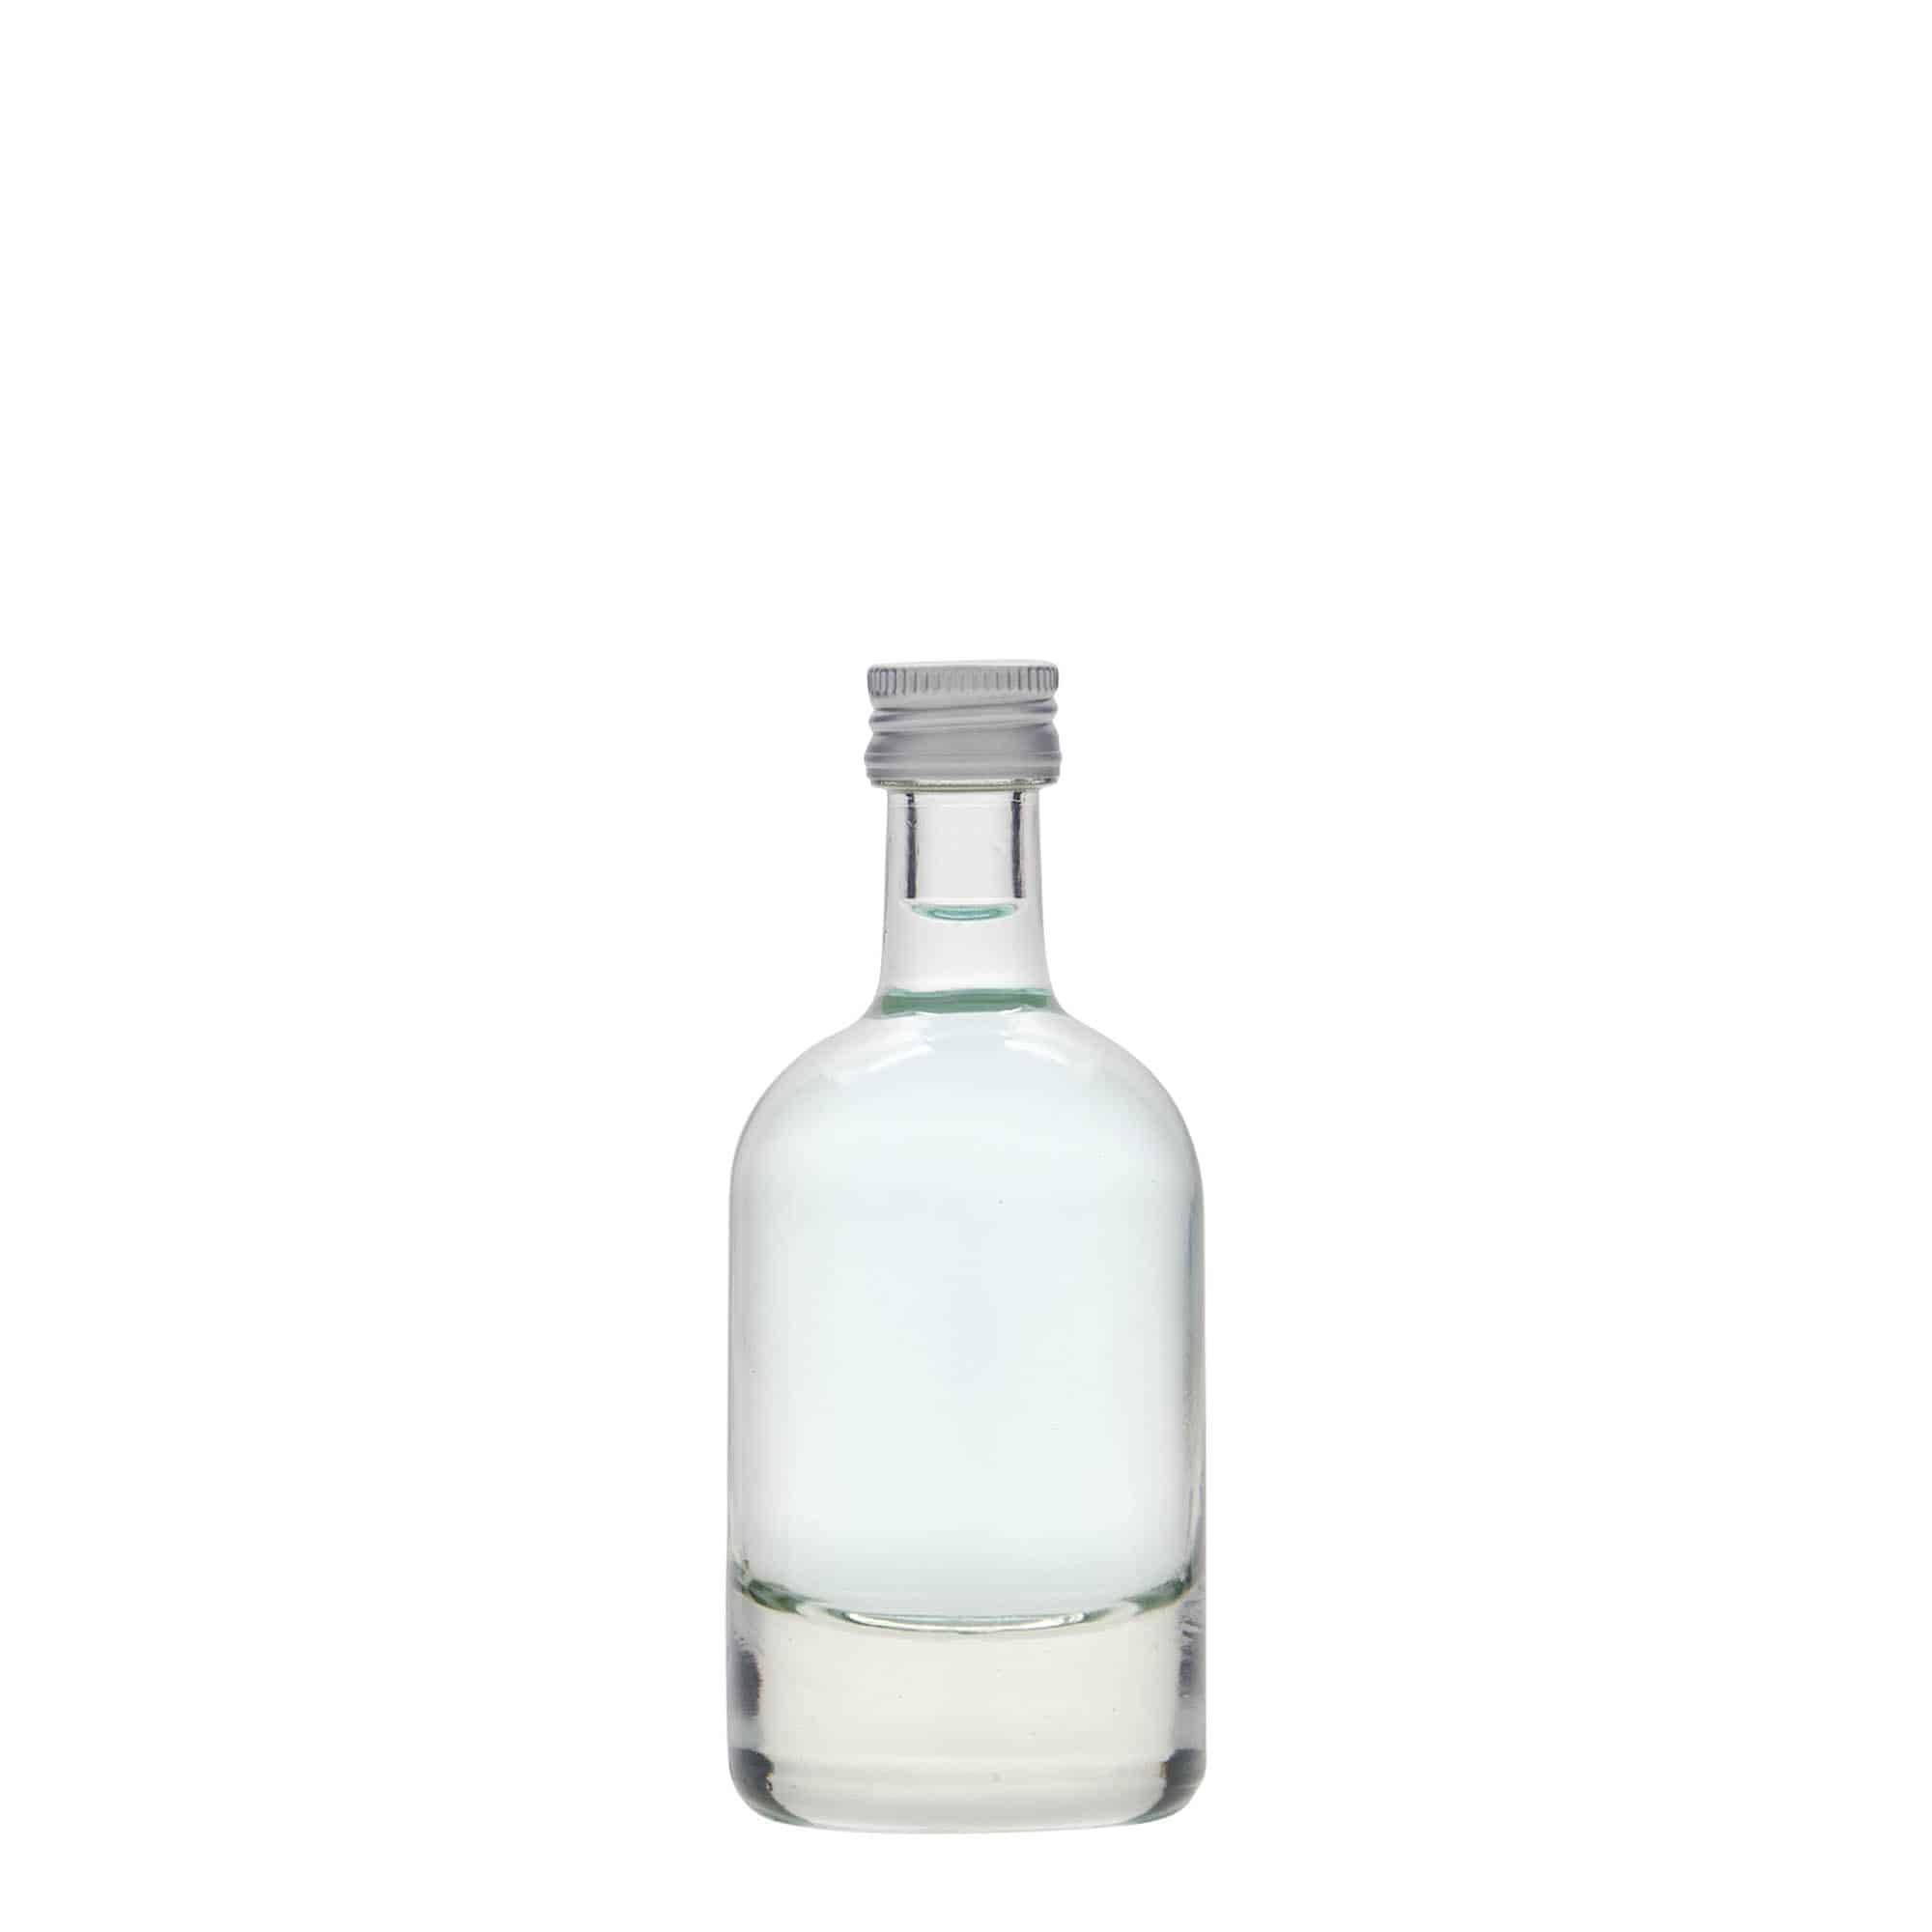 50 ml glass bottle 'Linea Uno', closure: PP 18